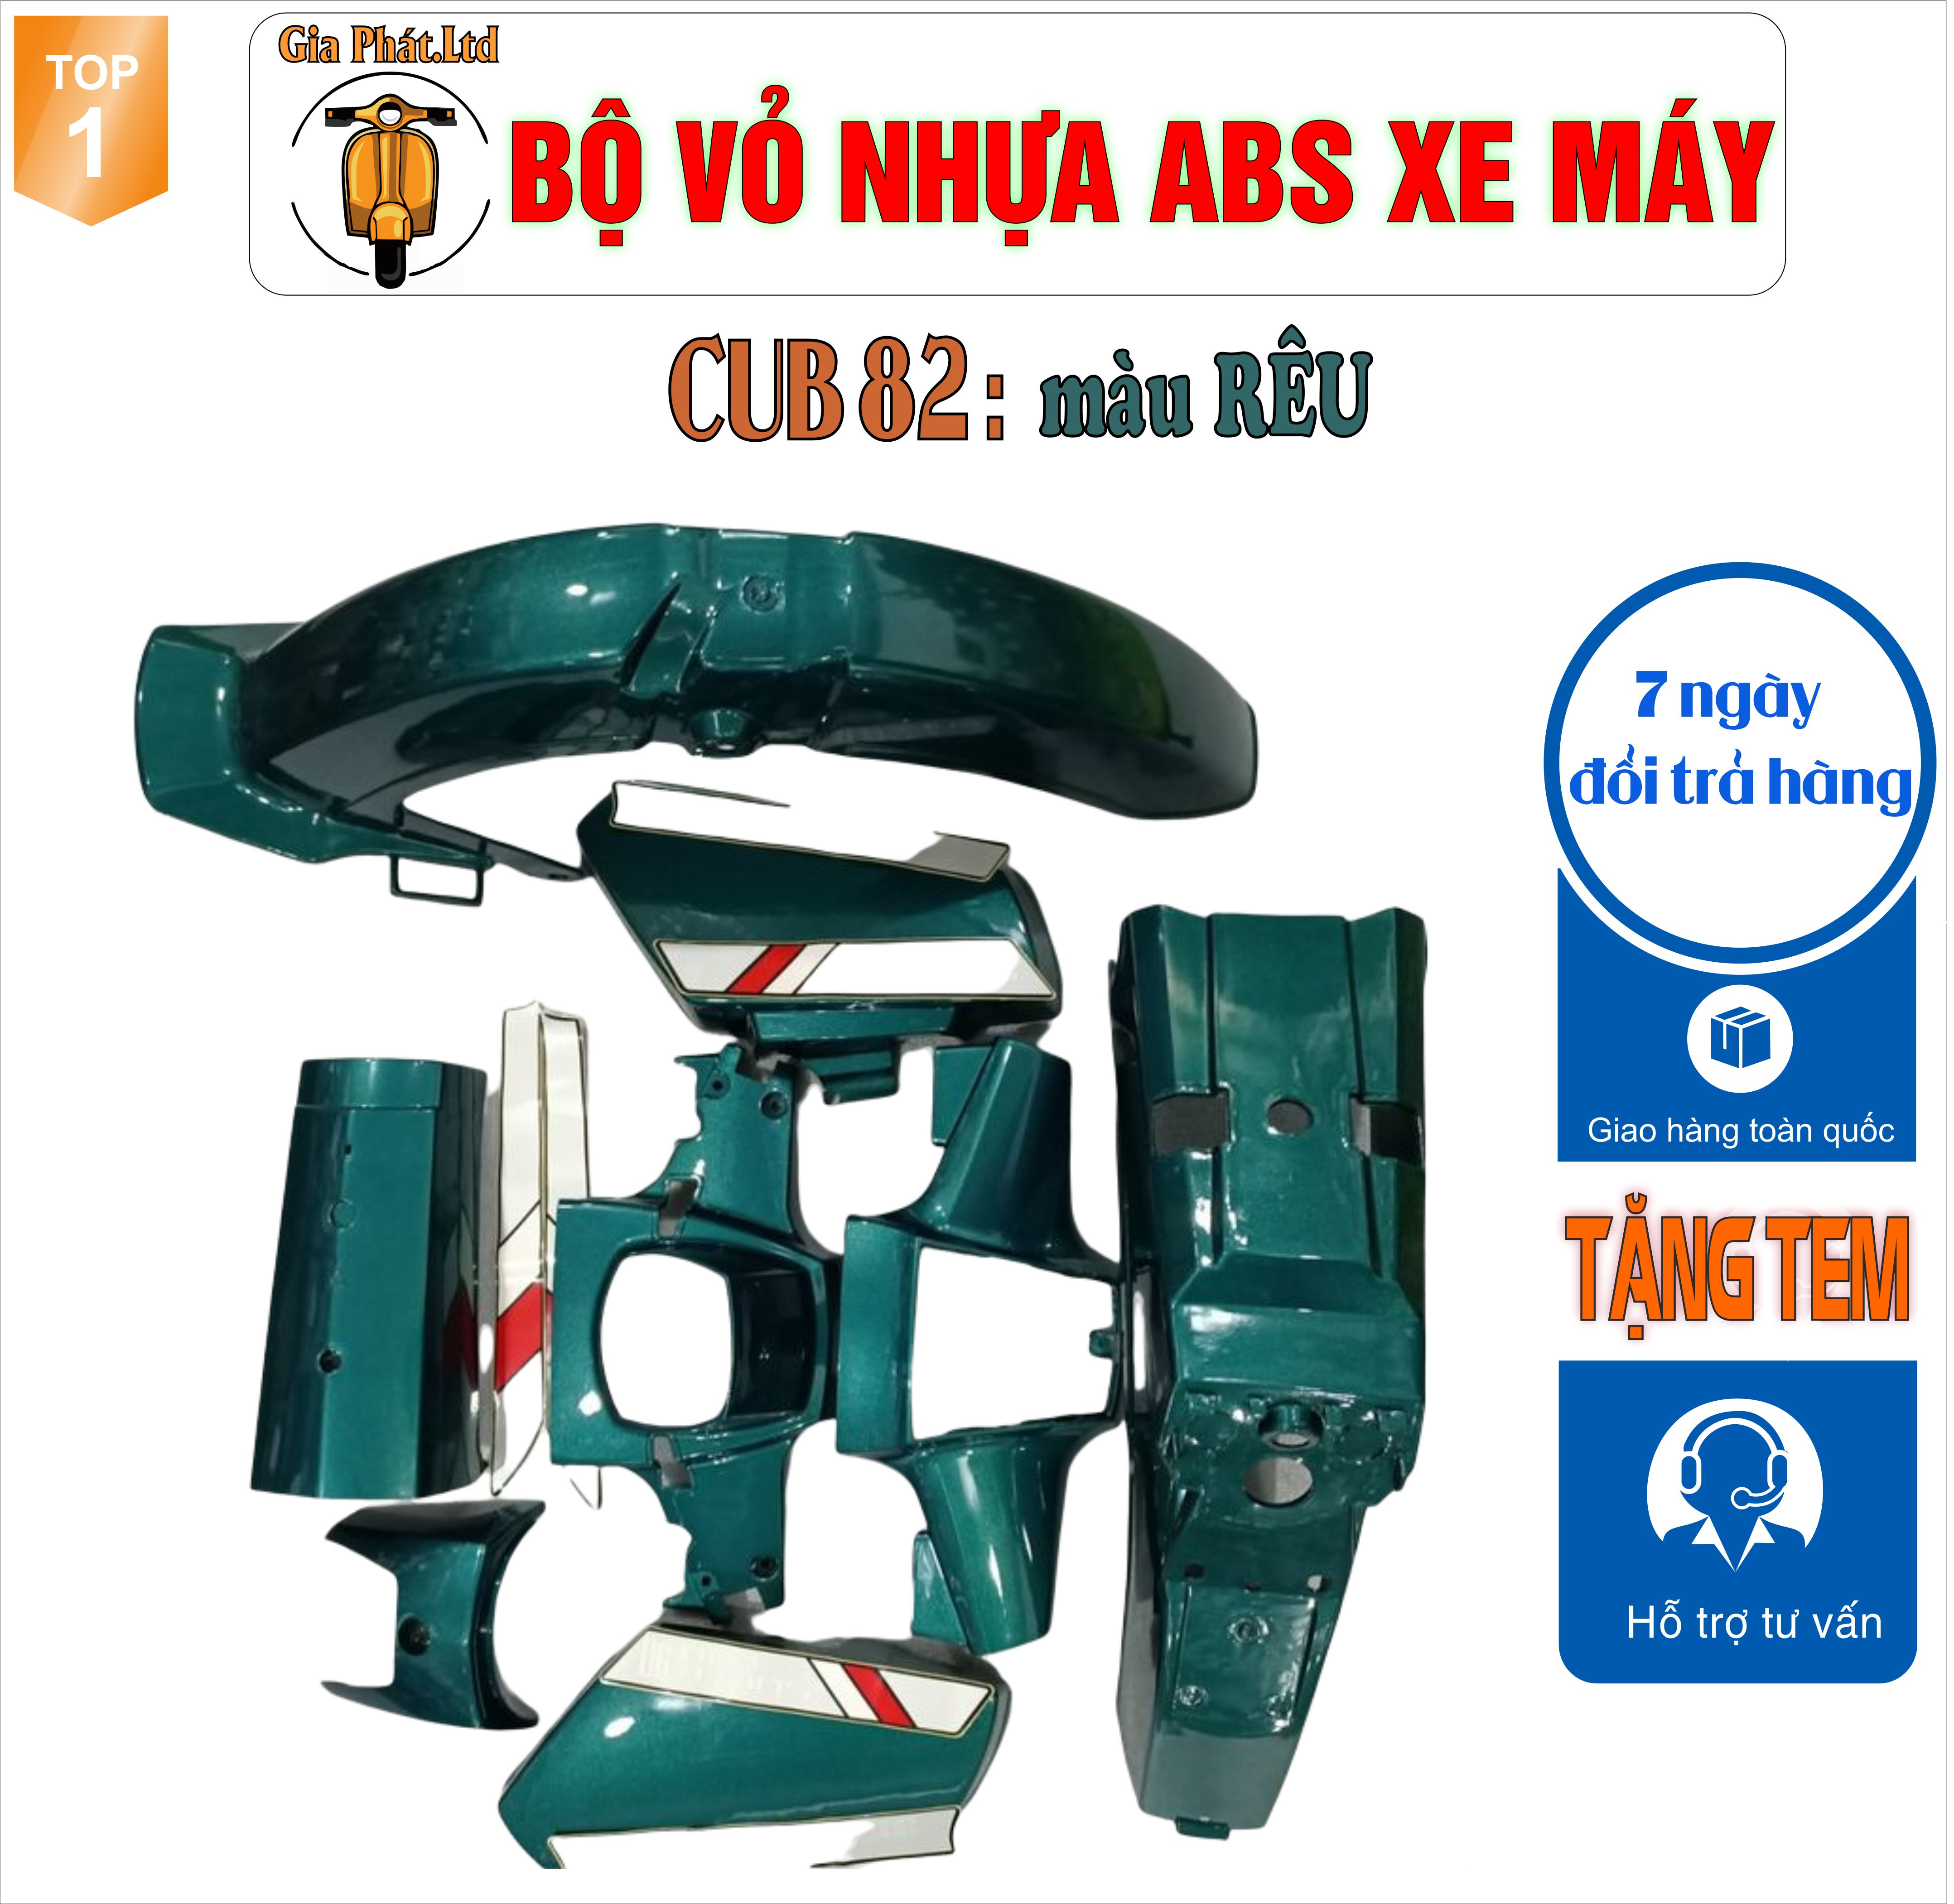 [Tặng tem] Bộ dàn áo xe Cub 82 màu XANH RÊU - nhựa ABS cao cấp -TKB-2957-5862